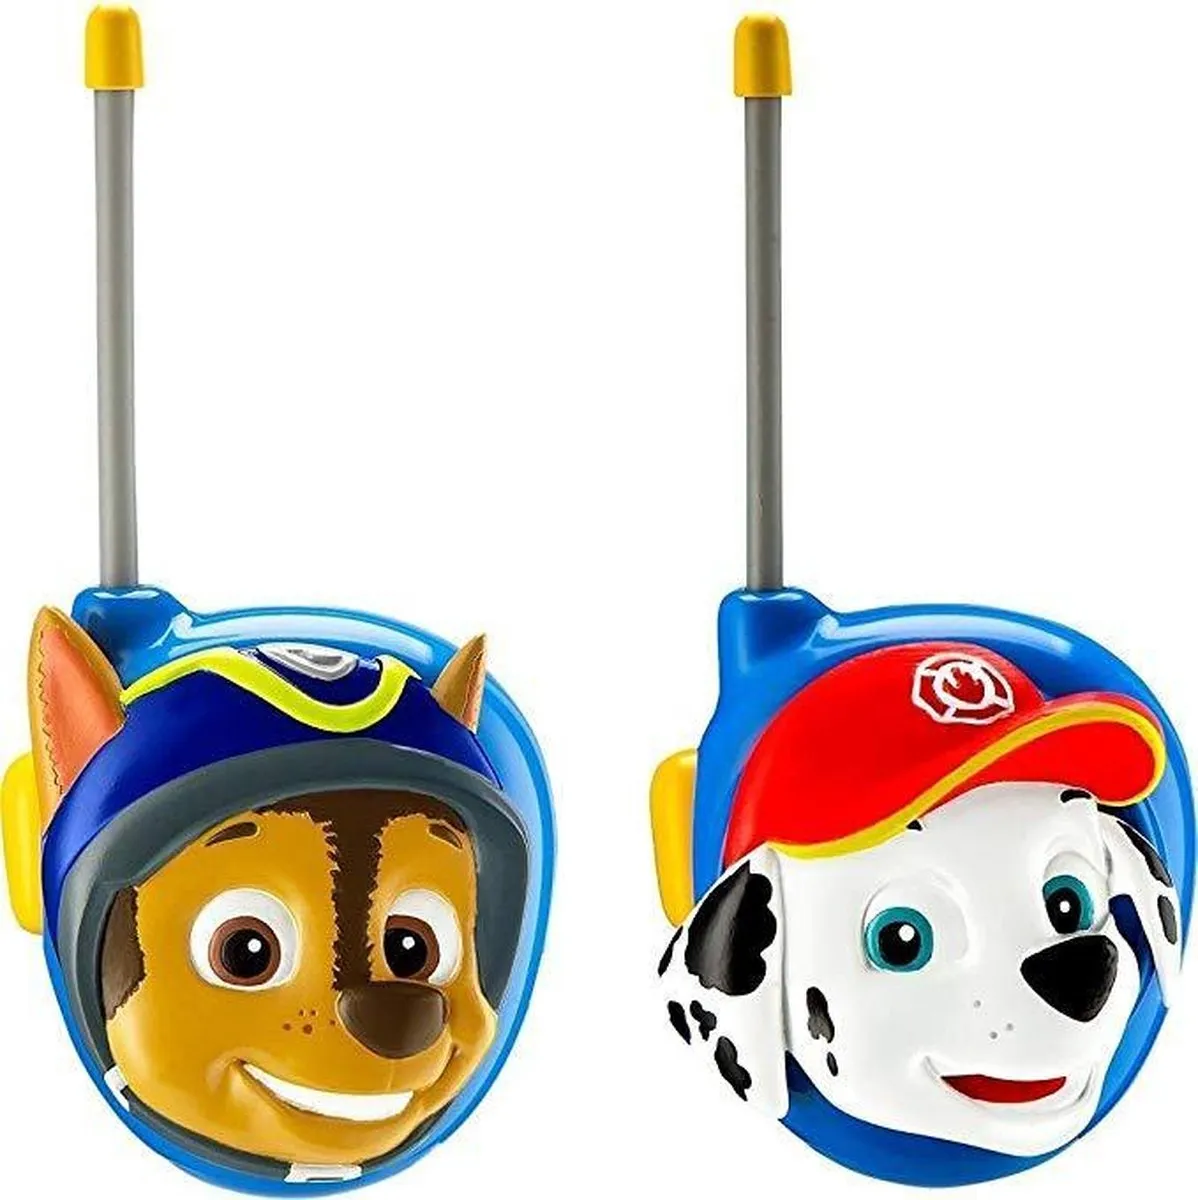 Paw Patrol Walkie Talkies speelgoed | Nickelodeon speelgoed